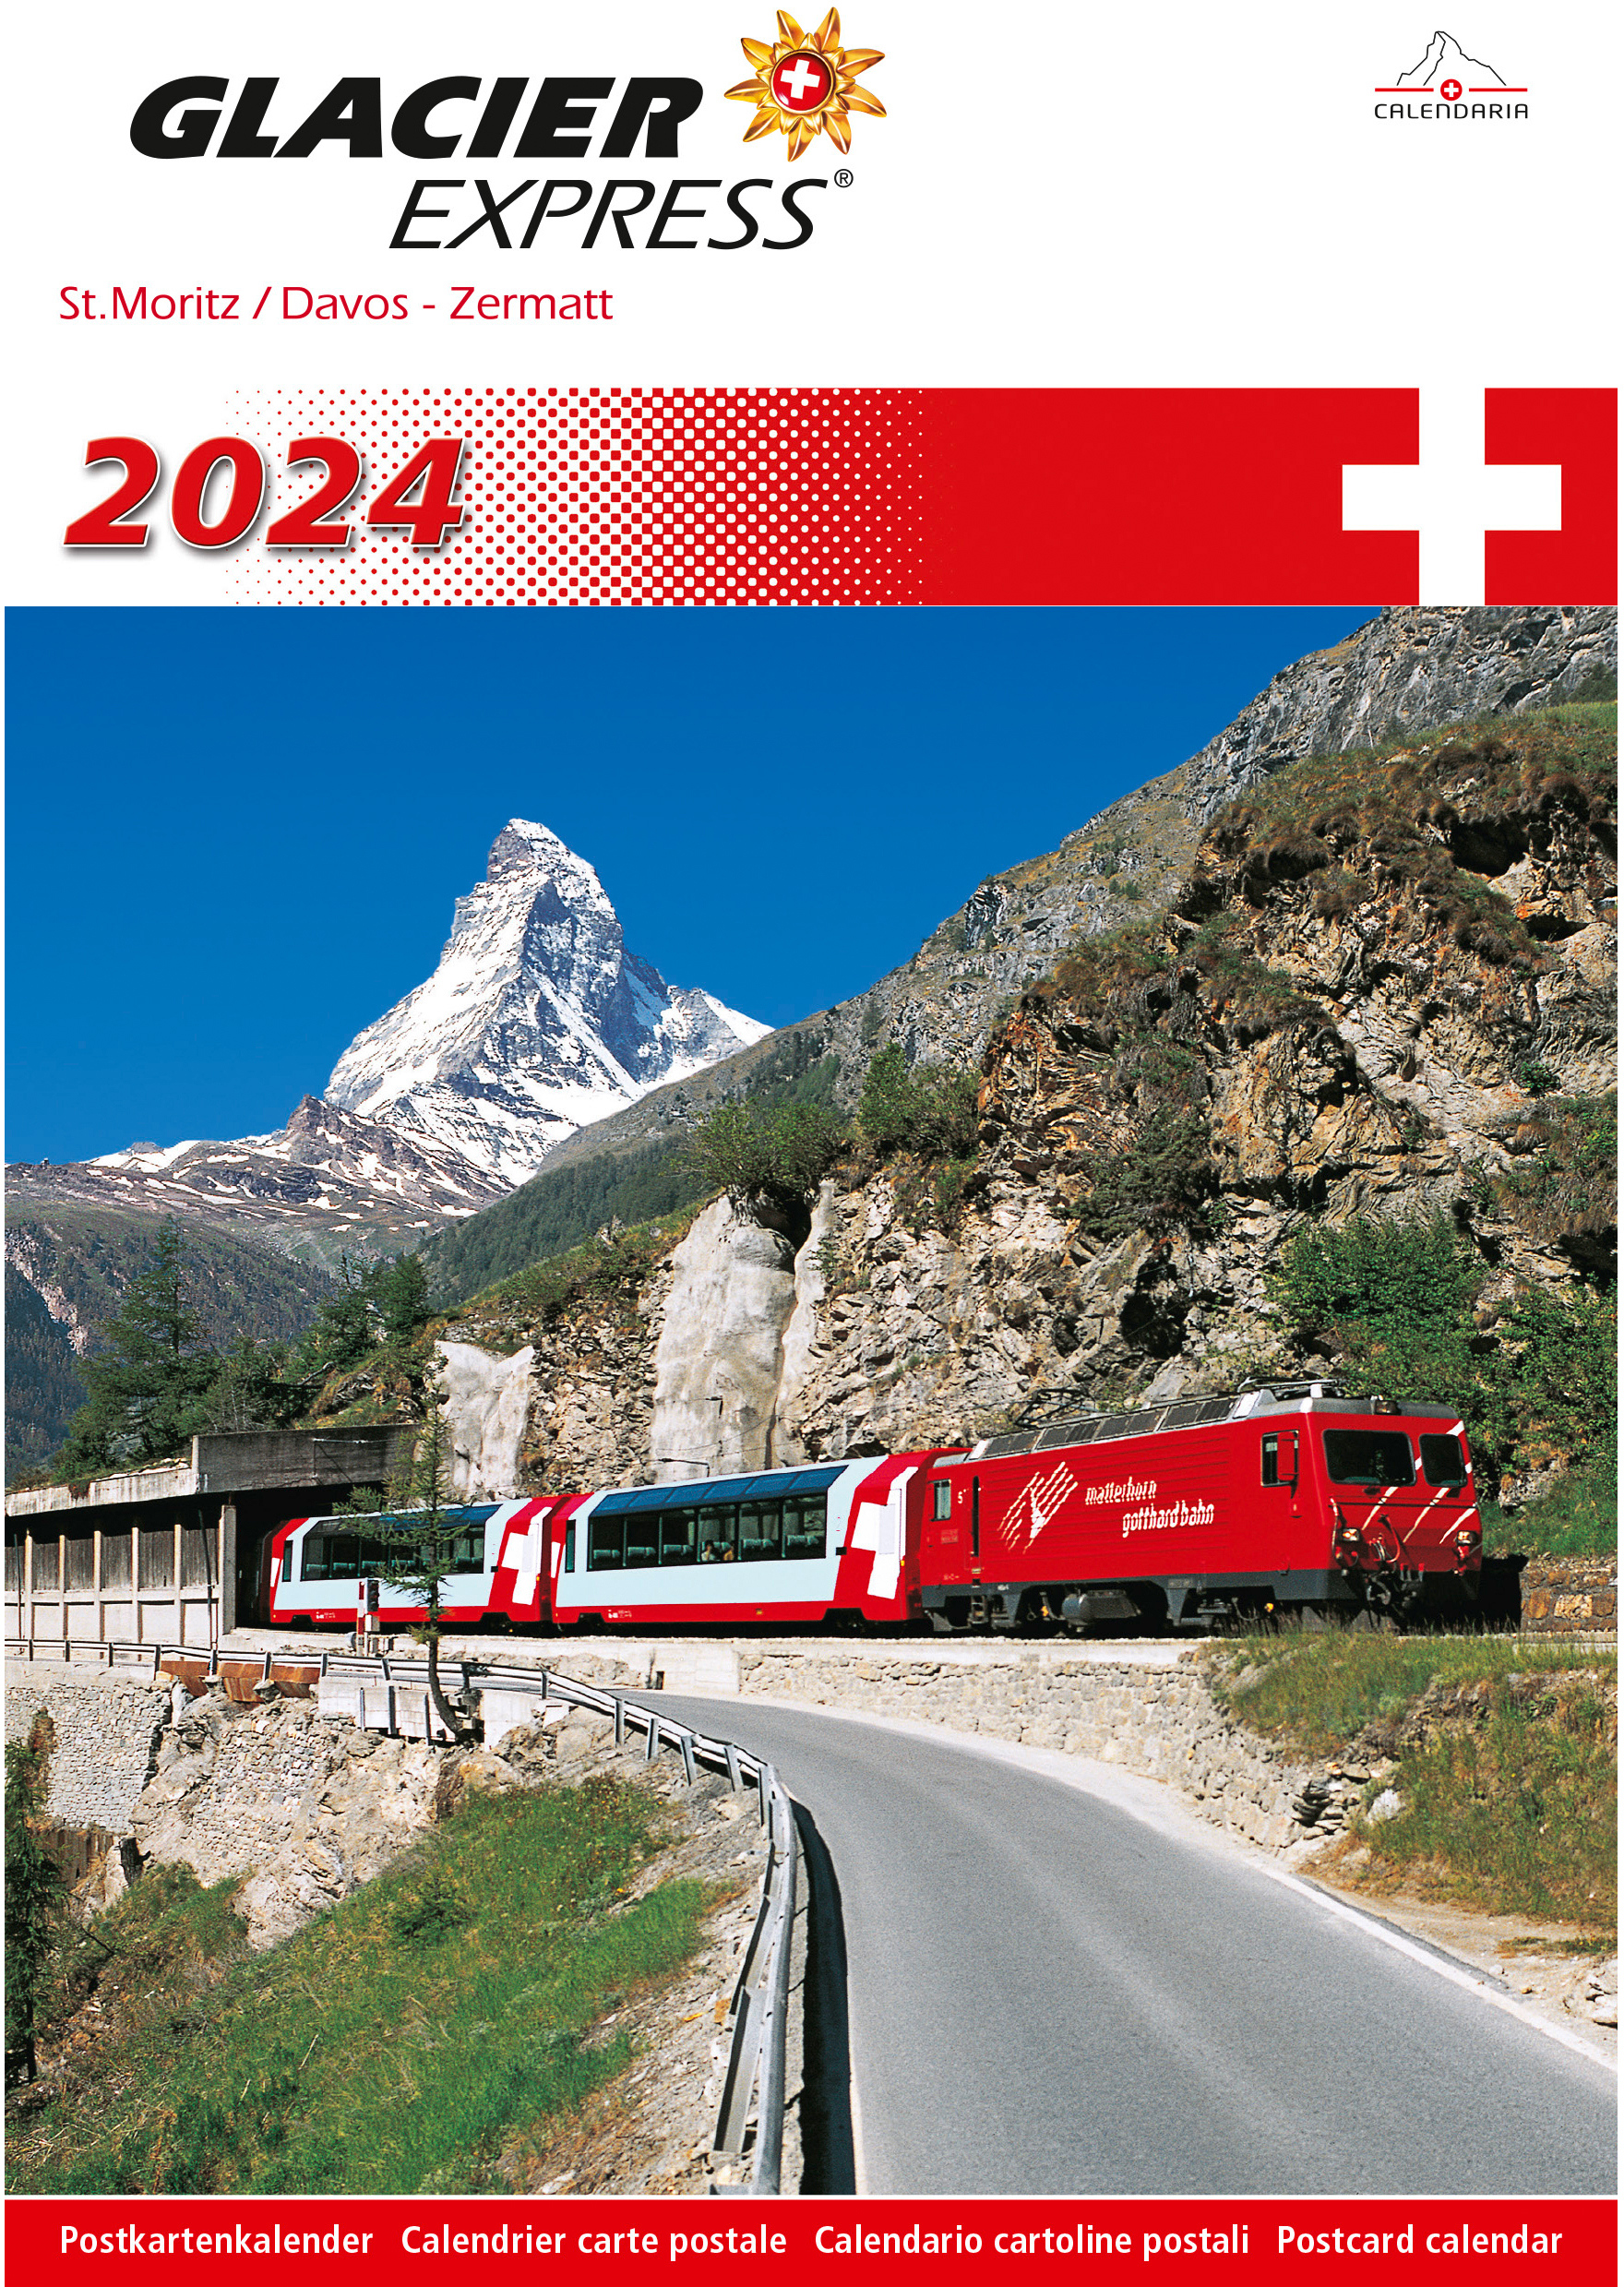 CALENDARIA Glacier-Express 2024 43494635 D/F/I/E 14.8x22cm